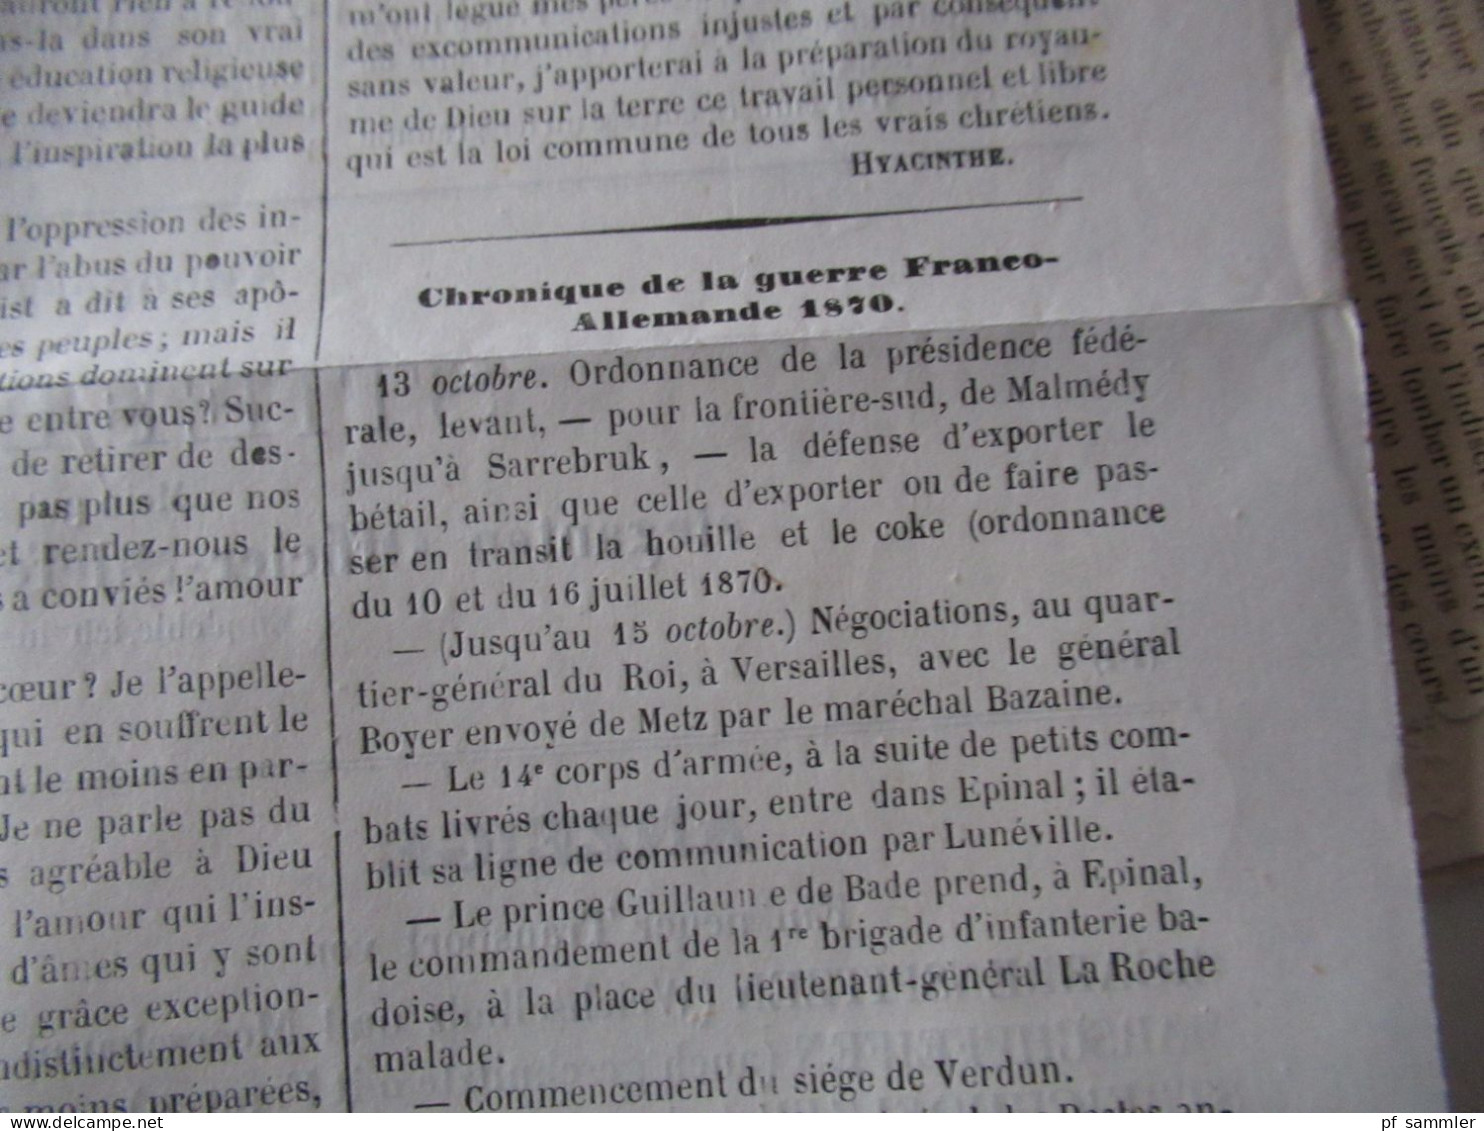 Guerre 1870 / Deutsch-Französischer Krieg / Zeitungen / Kriegberichte Fevrier 1871 / Moniteur Officiel Journal Quotidie